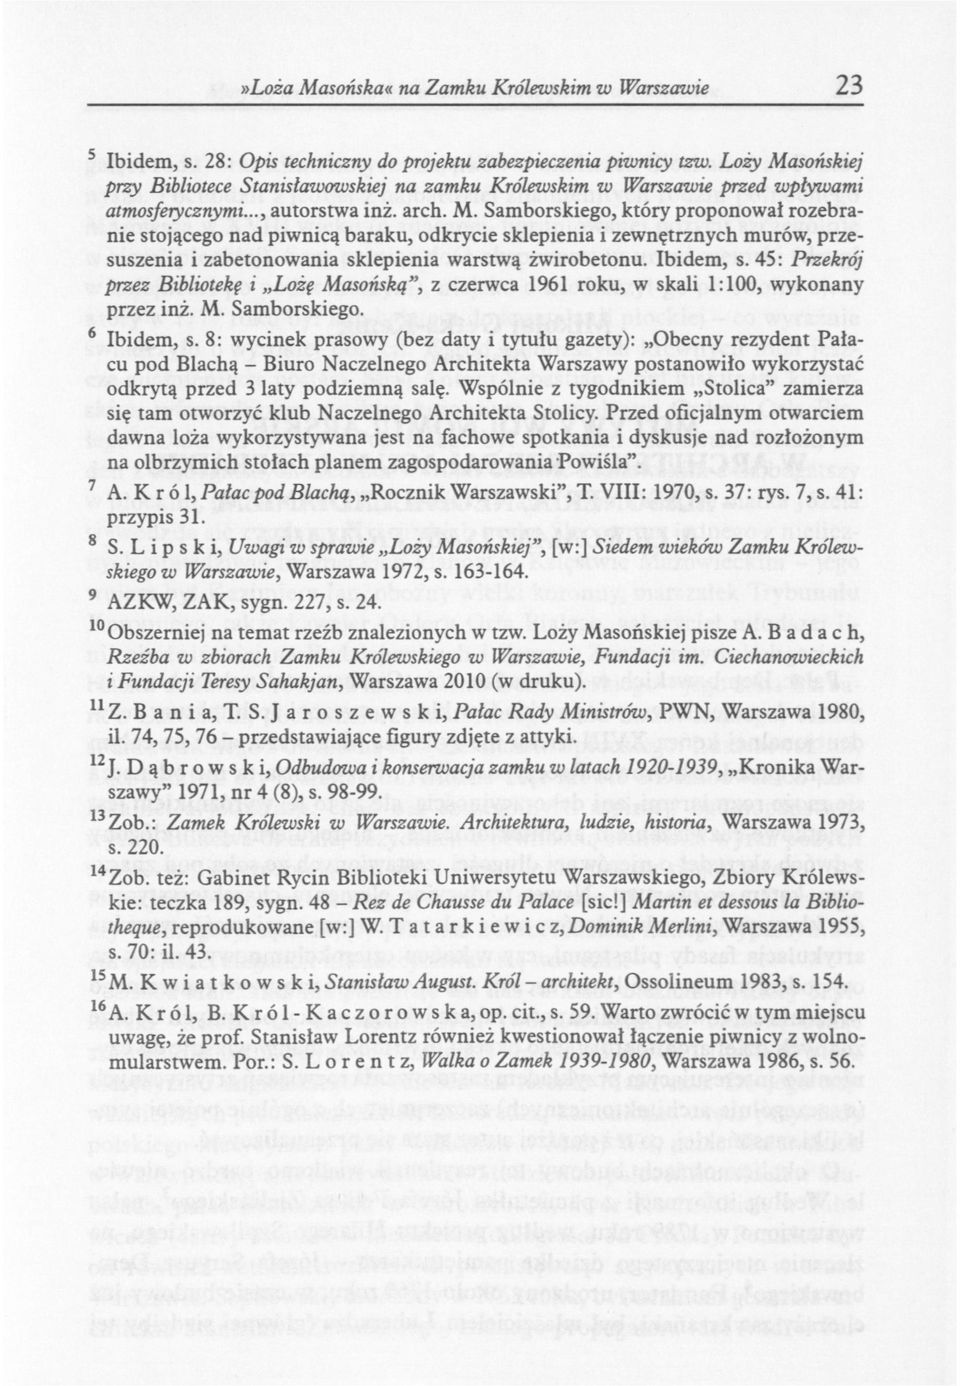 Ibidem, s. 45: Przekrój przez Bibliotekę i Lożę Masońską", z czerwca 1961 roku, w skali 1:100, wykonany przez inż. M. Samborskiego. 6 Ibidem, s.